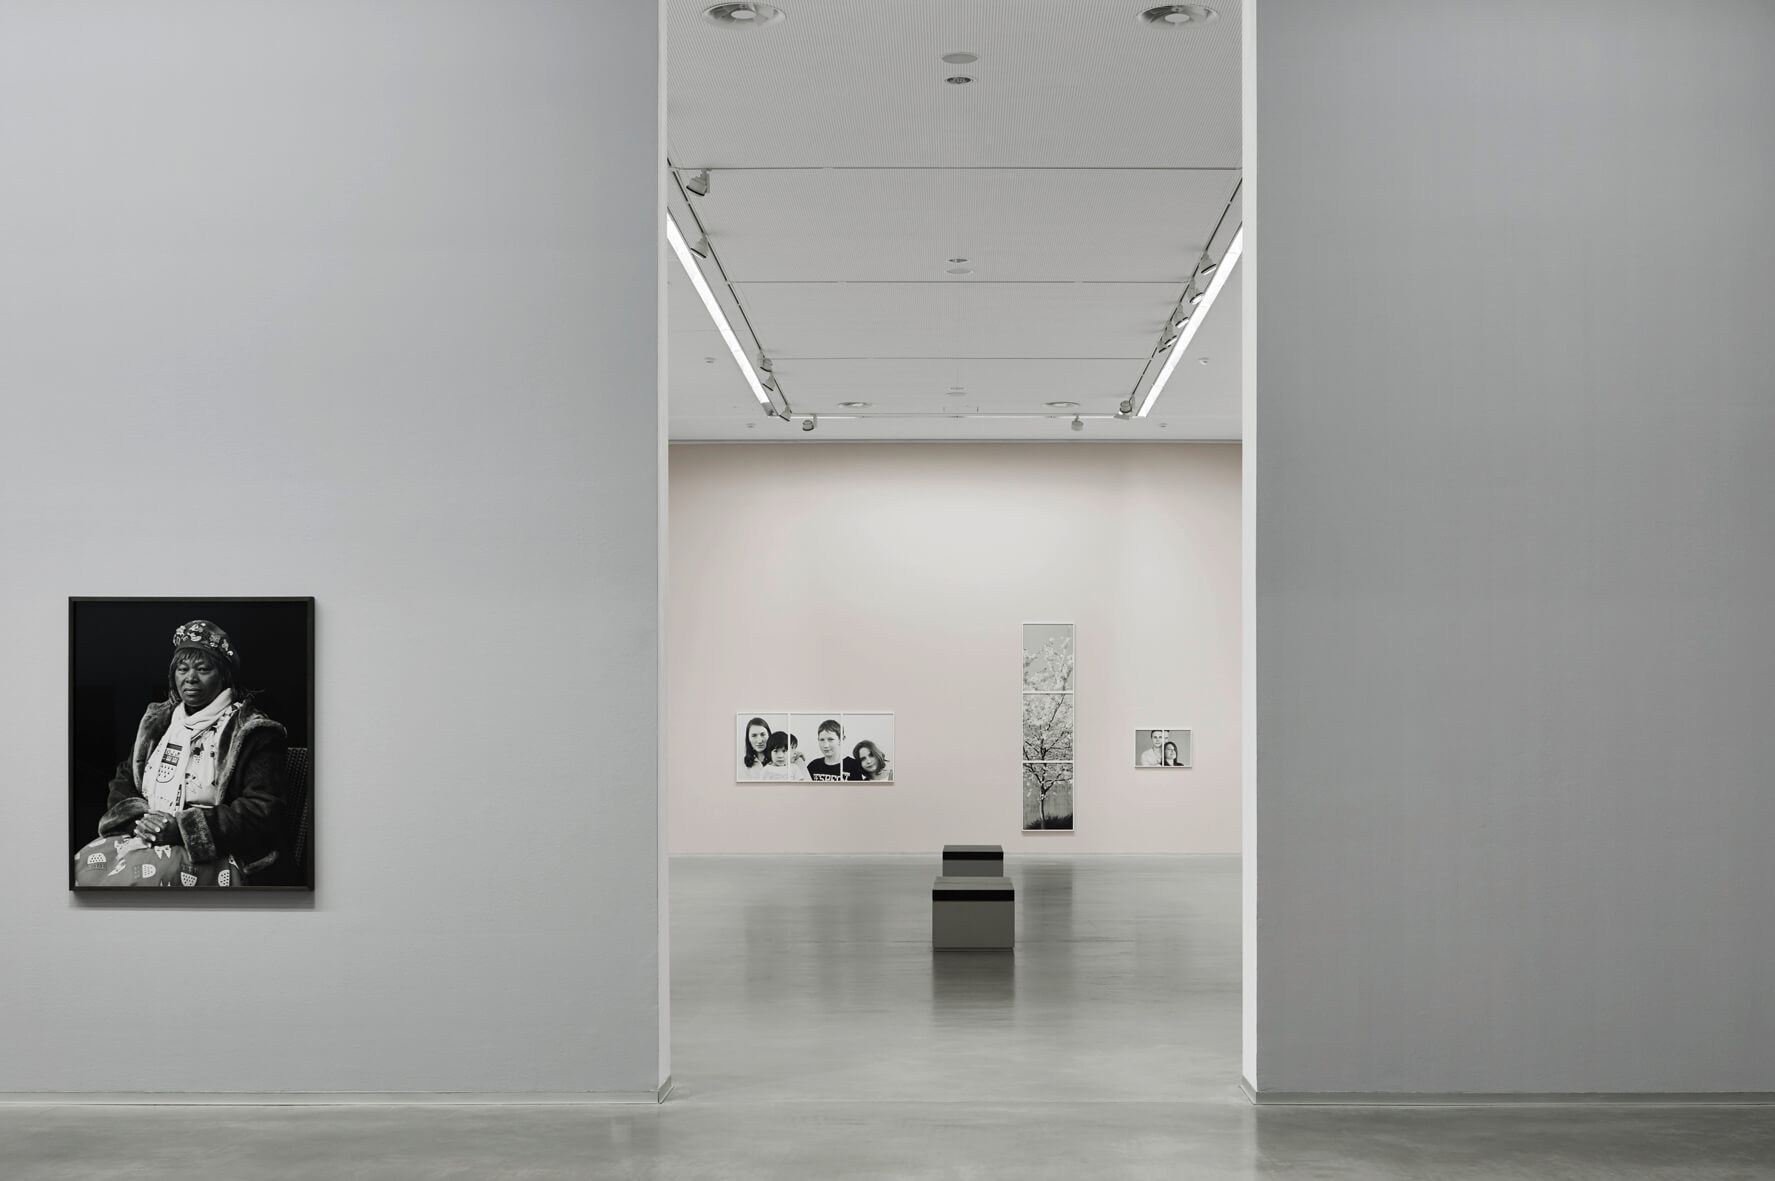 Berlinische Galerie - Museum für moderne und zeitgenössische Kunst in Berlin